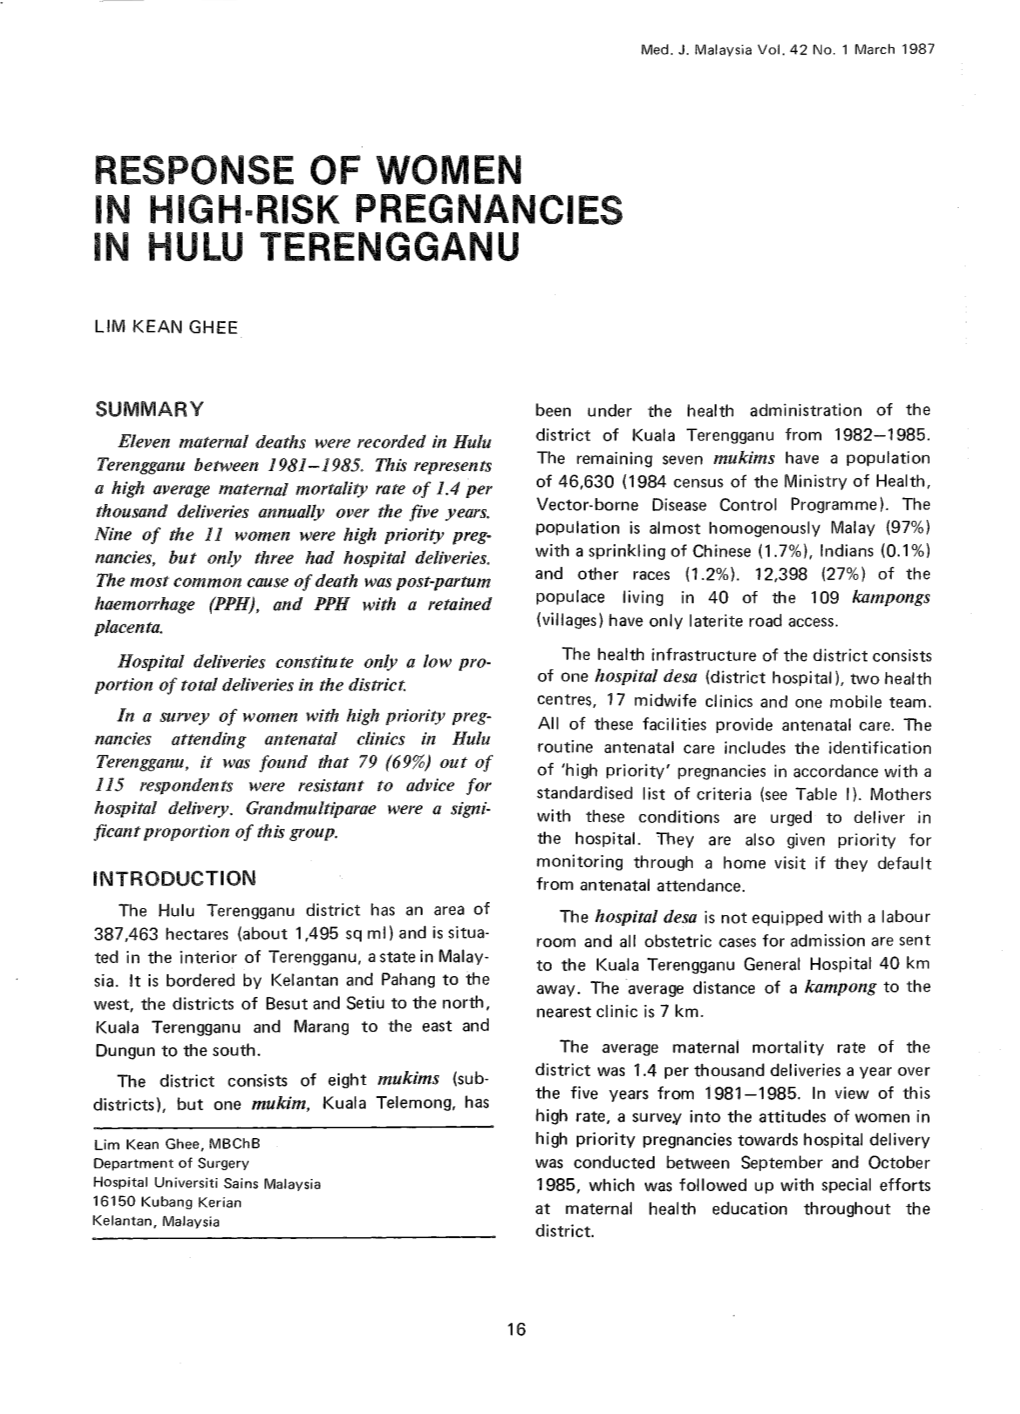 Response of Women in High Risk Pregnancies in Hulu Terengganu